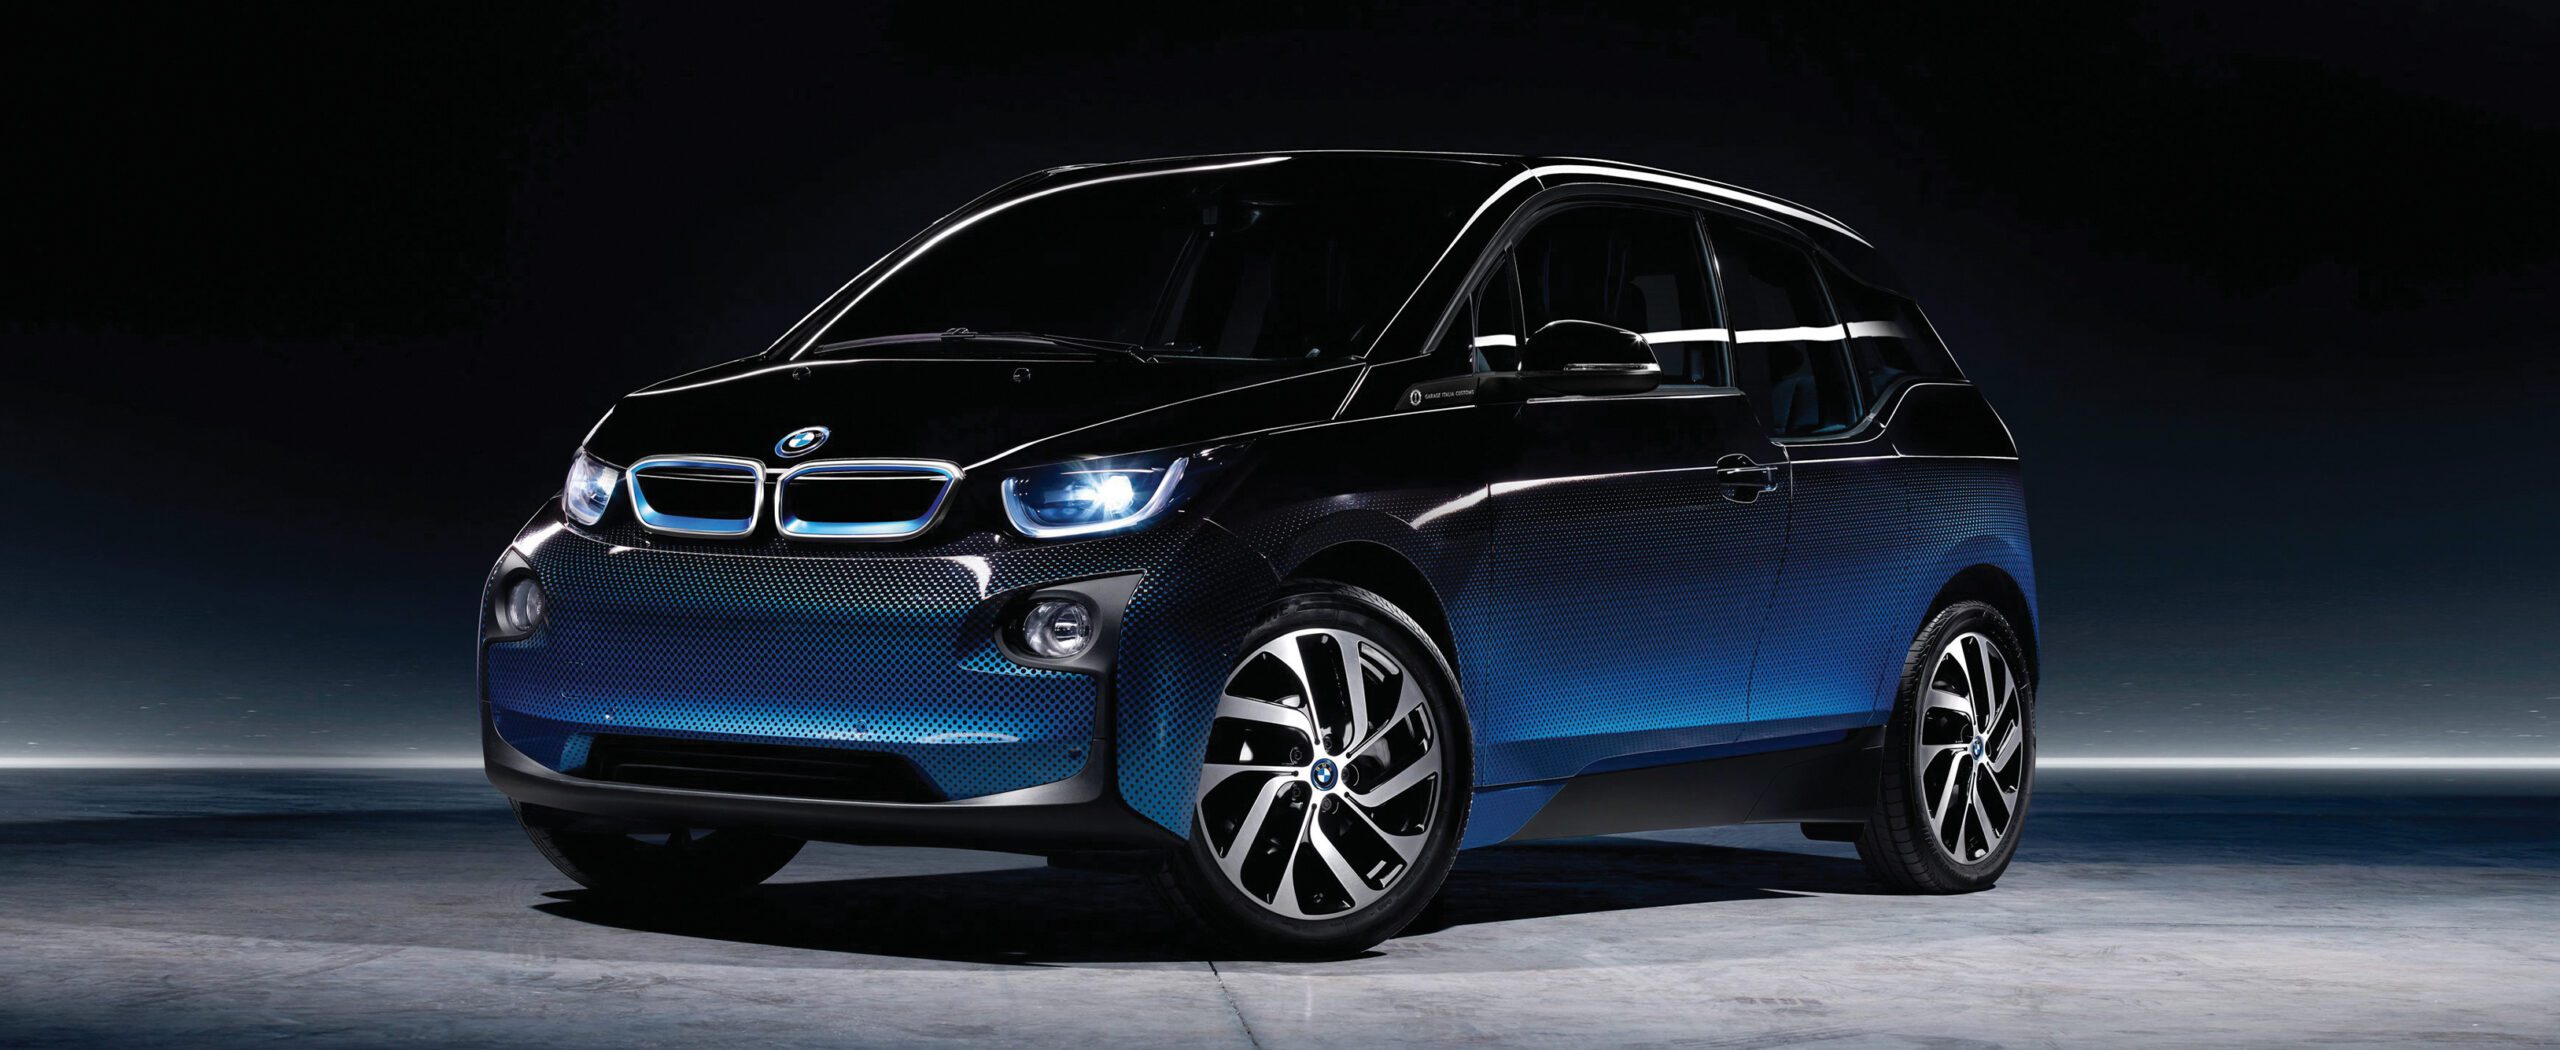 Marca del Mes: BMW, Movilidad cargada de innovación